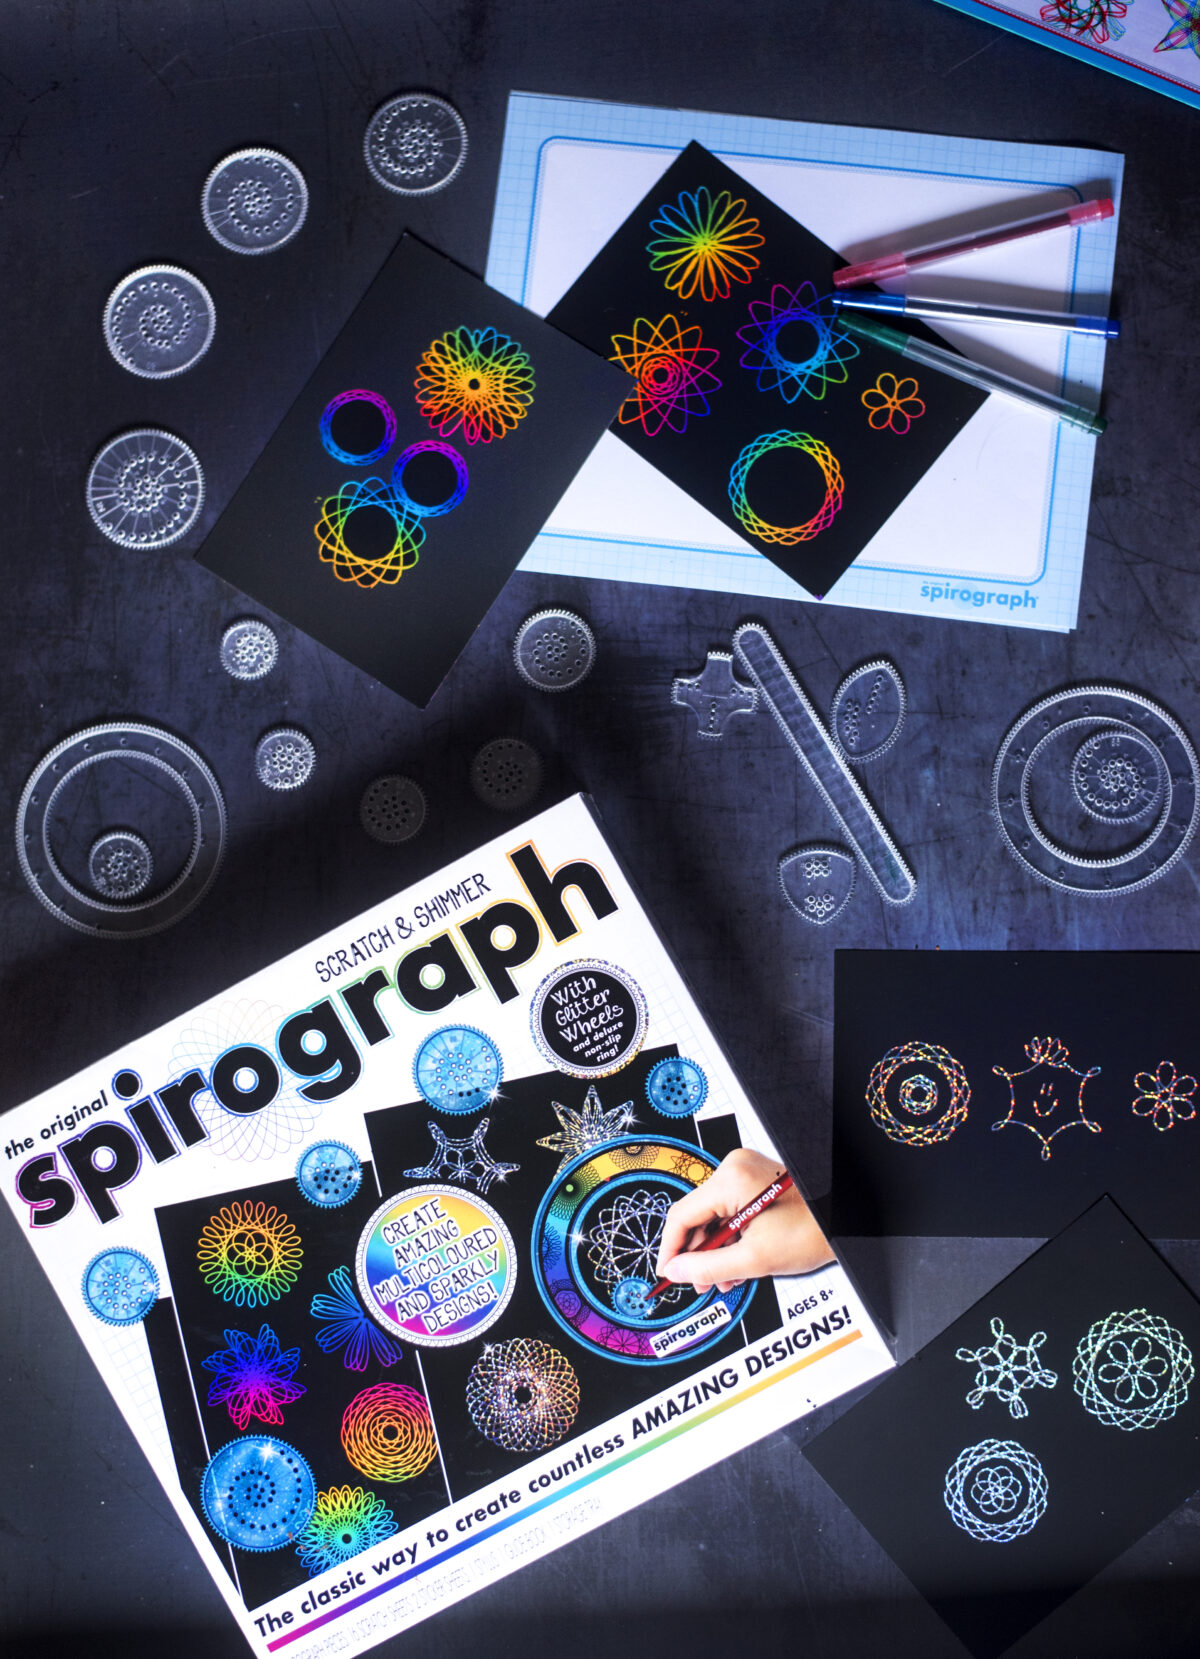 Spirograph Multicolor Pens